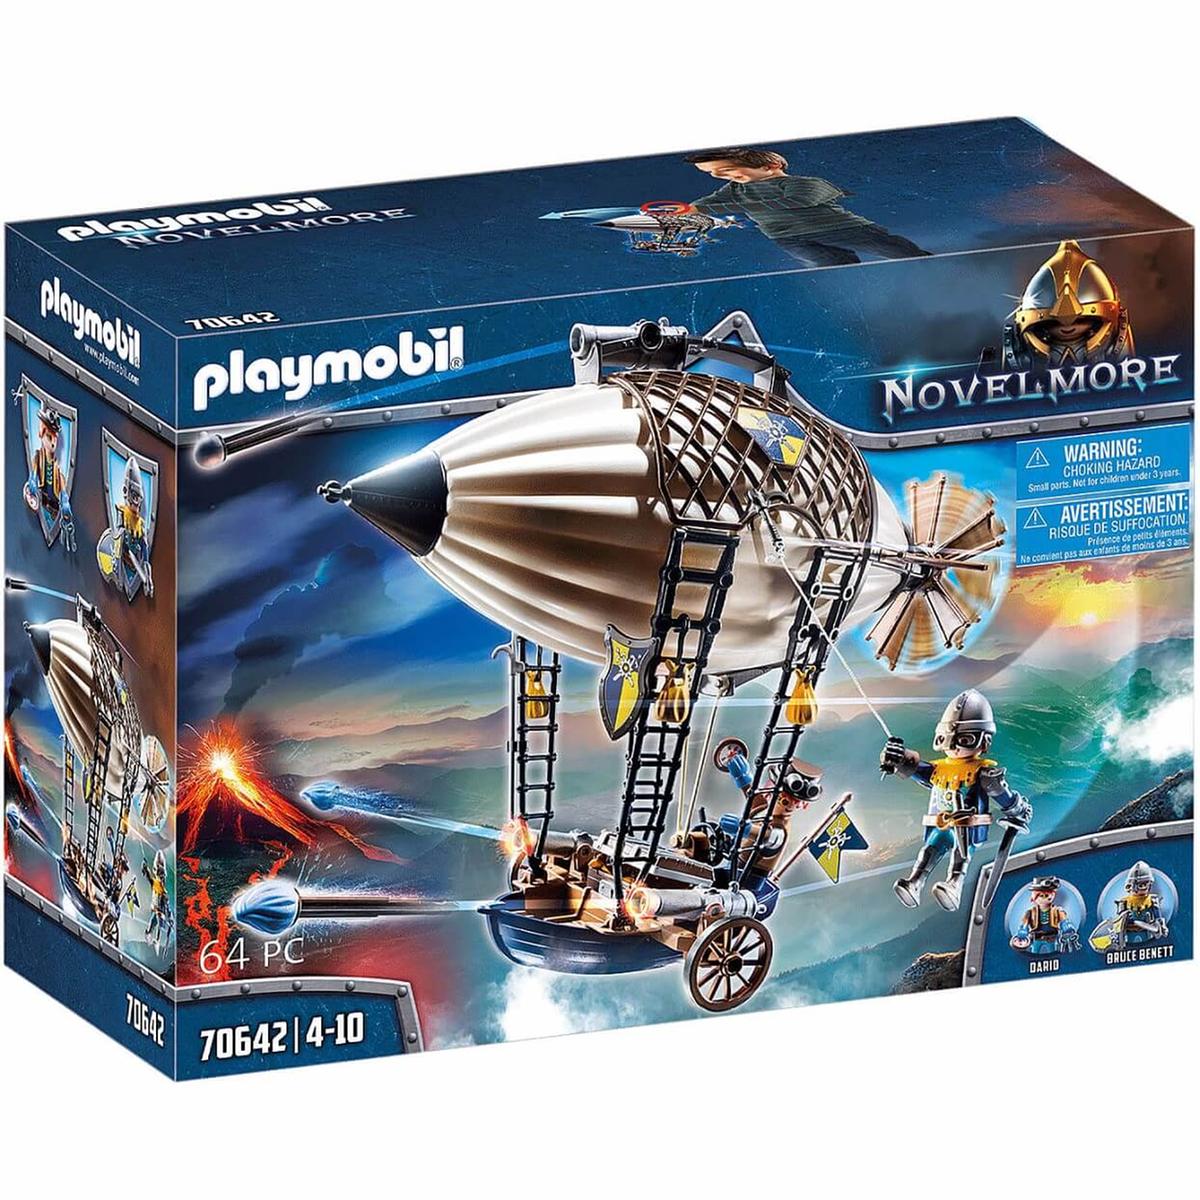 Playmobil - Zeppelin Novelmore de Dario 70642 | Playmobil Varios | Toys"R"Us  España